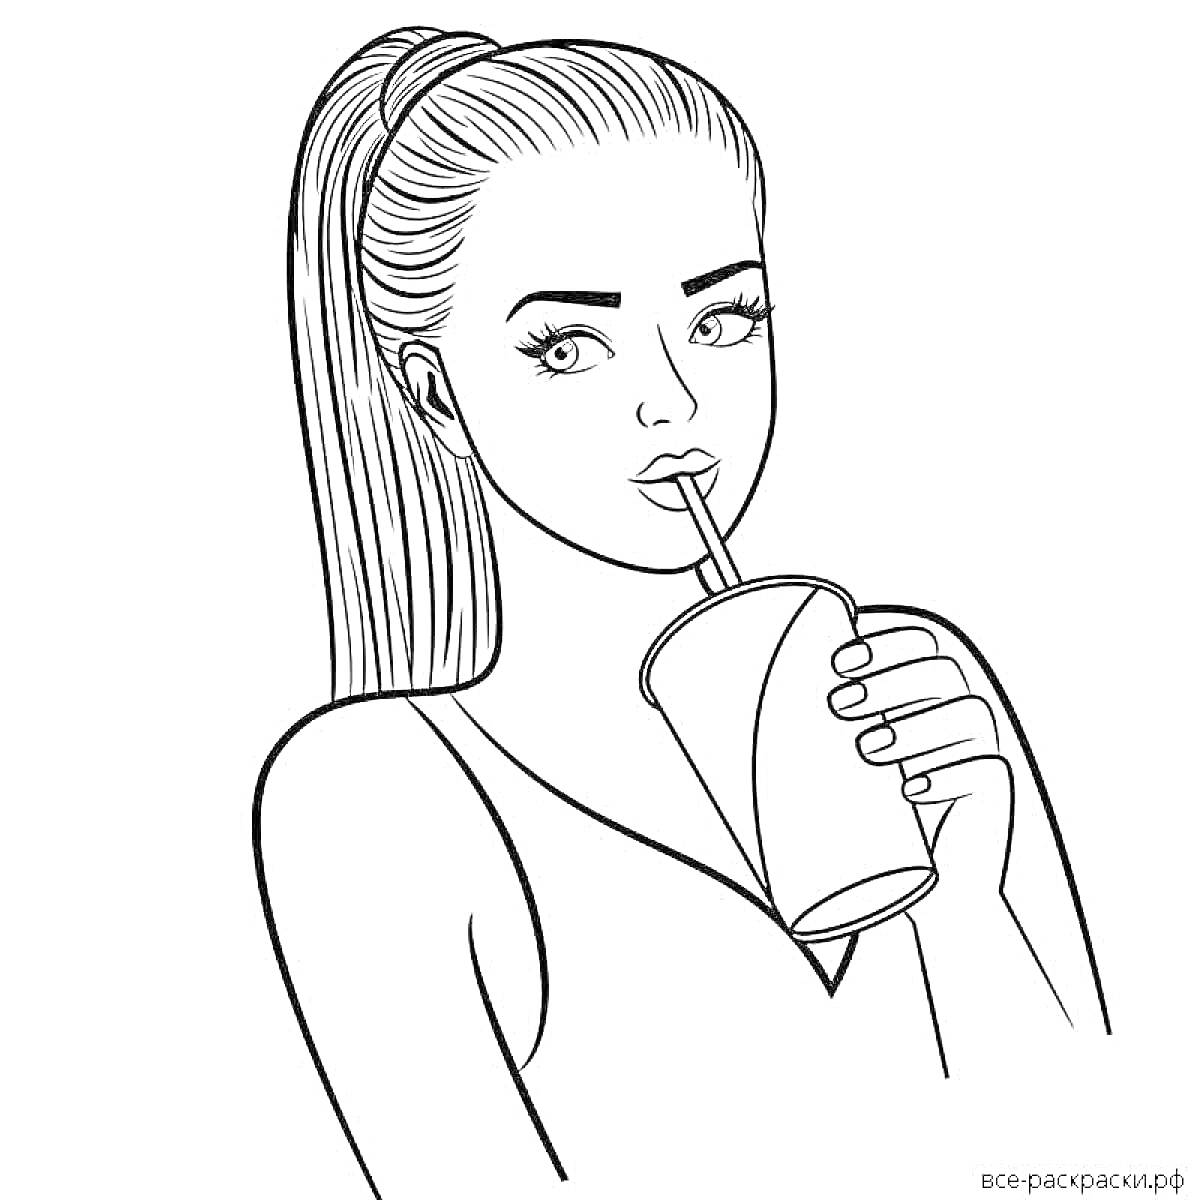 девушка с высоко собранными волосами пьет напиток через соломинку из стакана